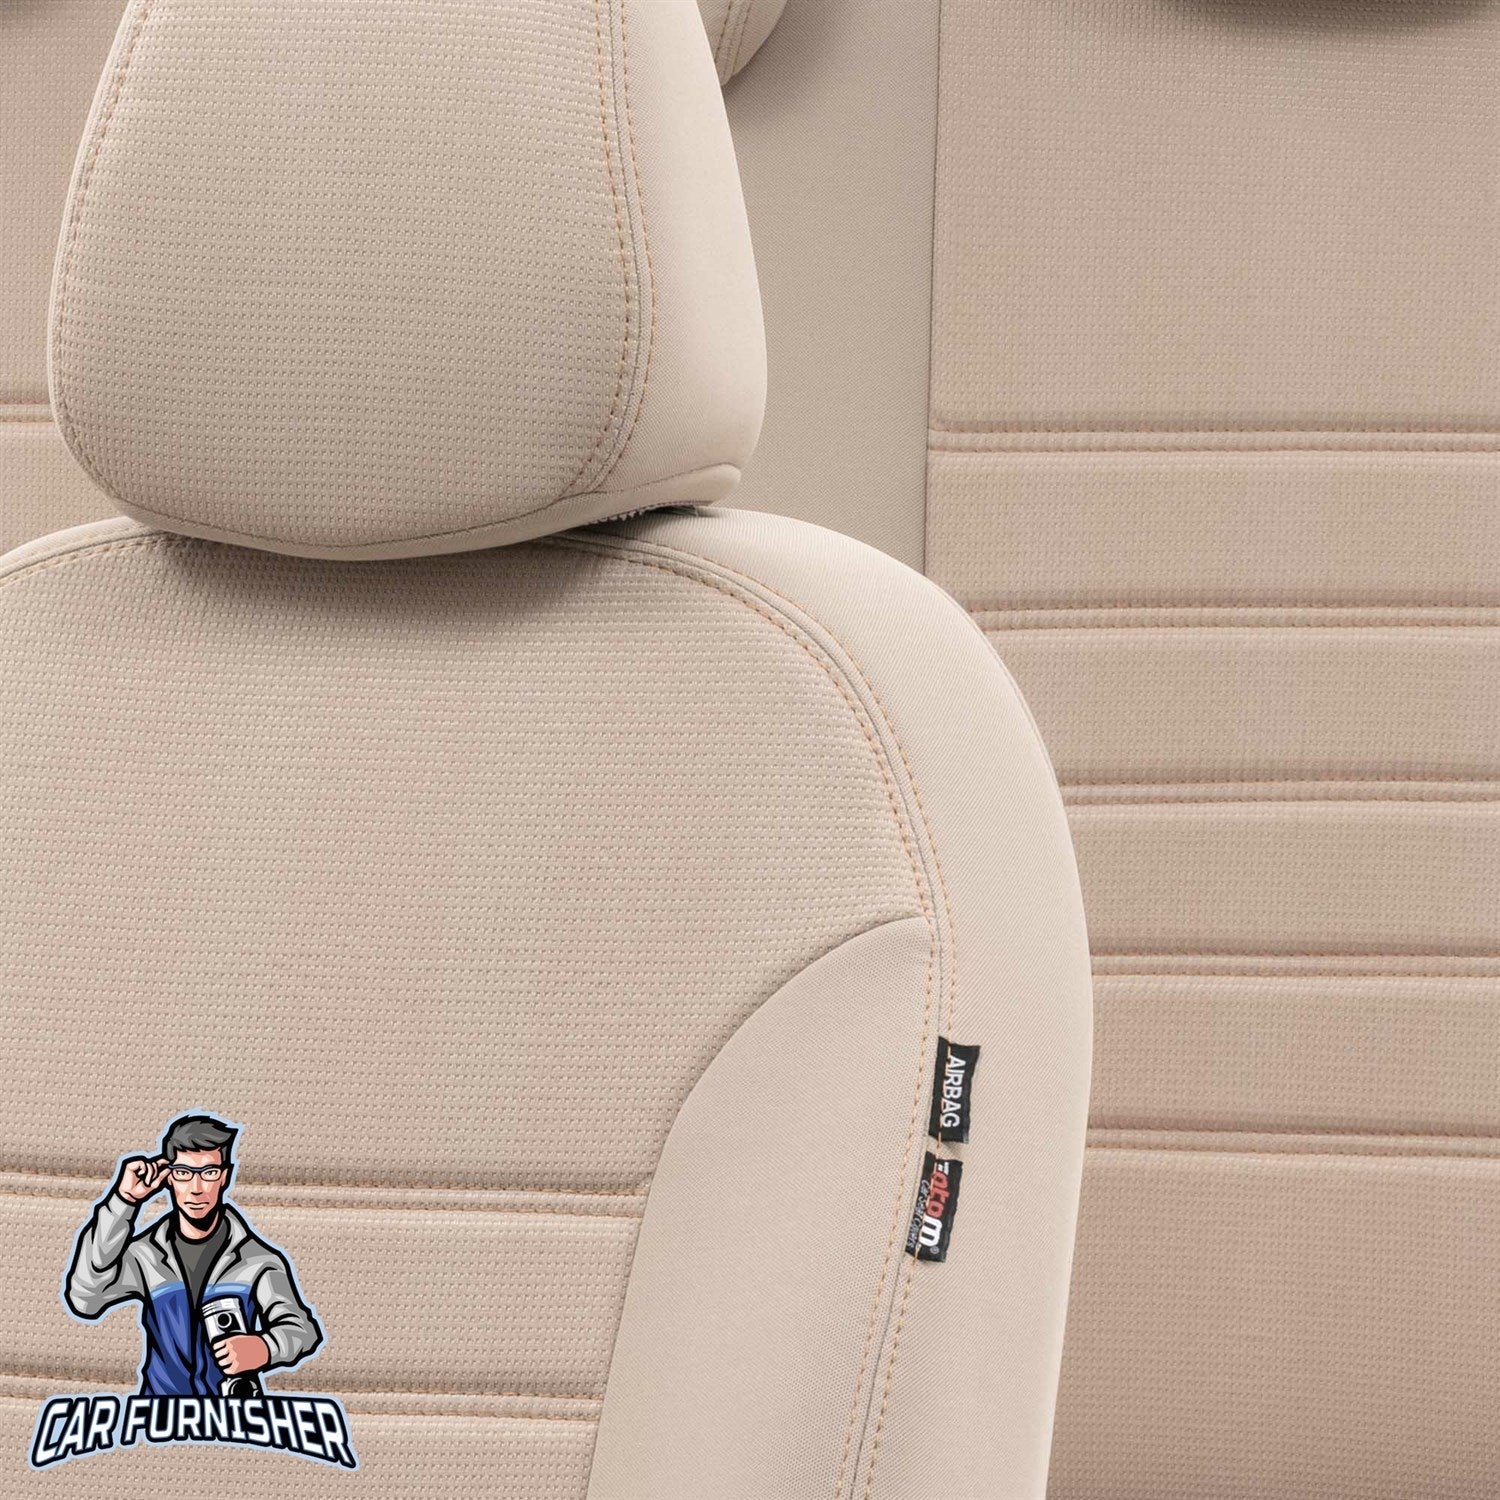 Fiat Palio Seat Covers Original Jacquard Design Beige Jacquard Fabric